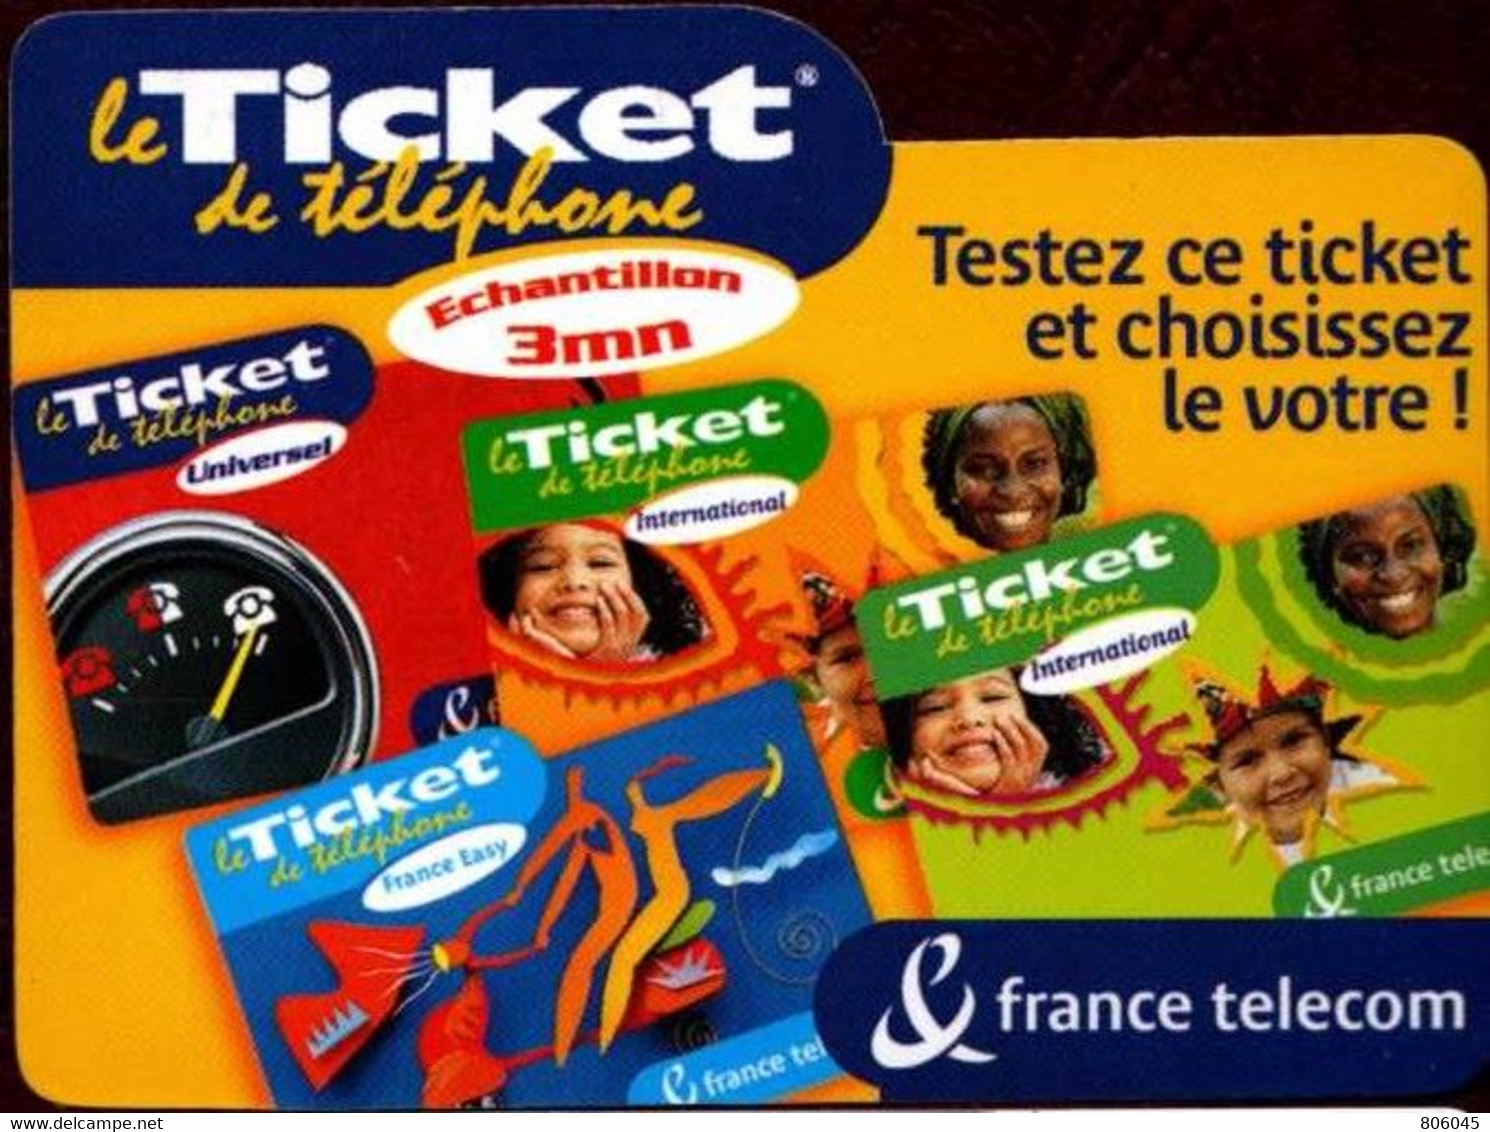 Ticket Télépone Orange - échantillon 3 Mn. - FT